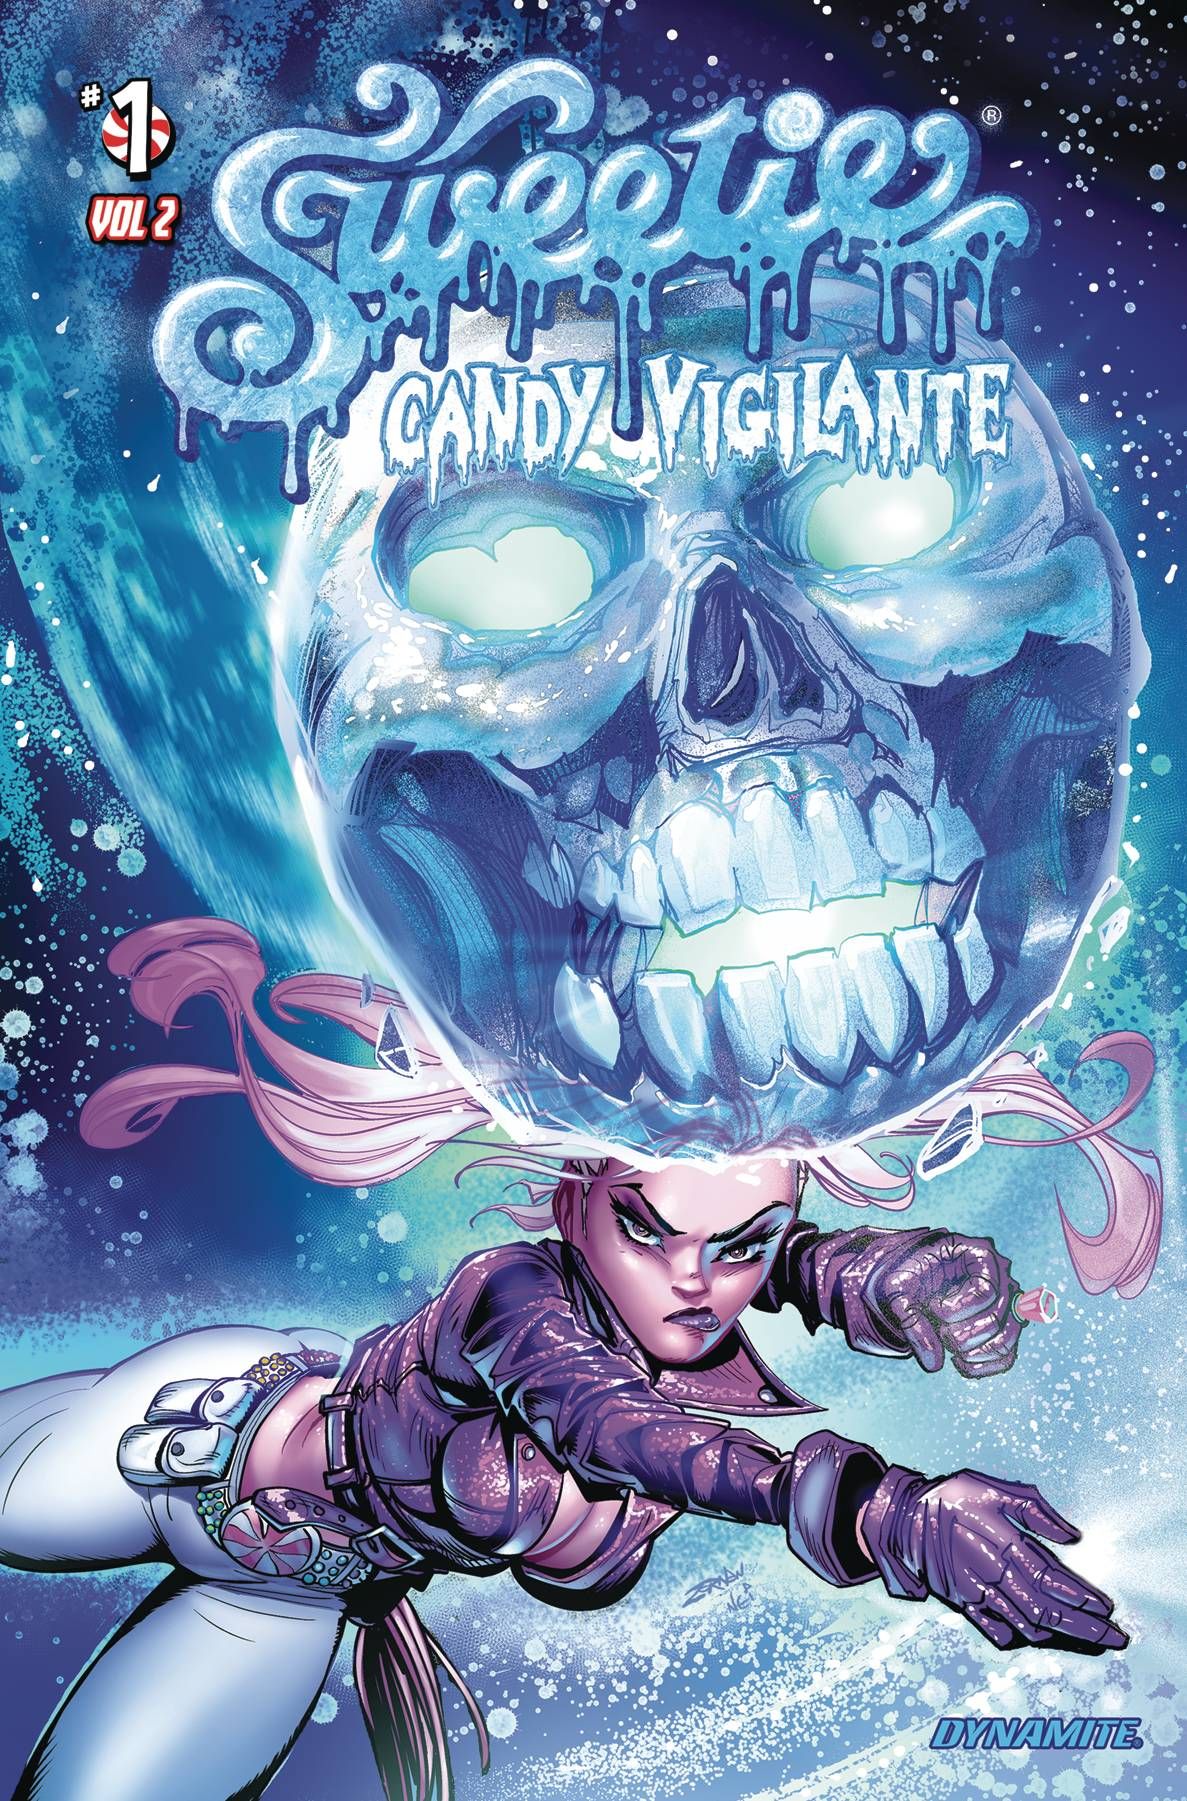 Sweetie Candy Vigilante Vol 2 Comic